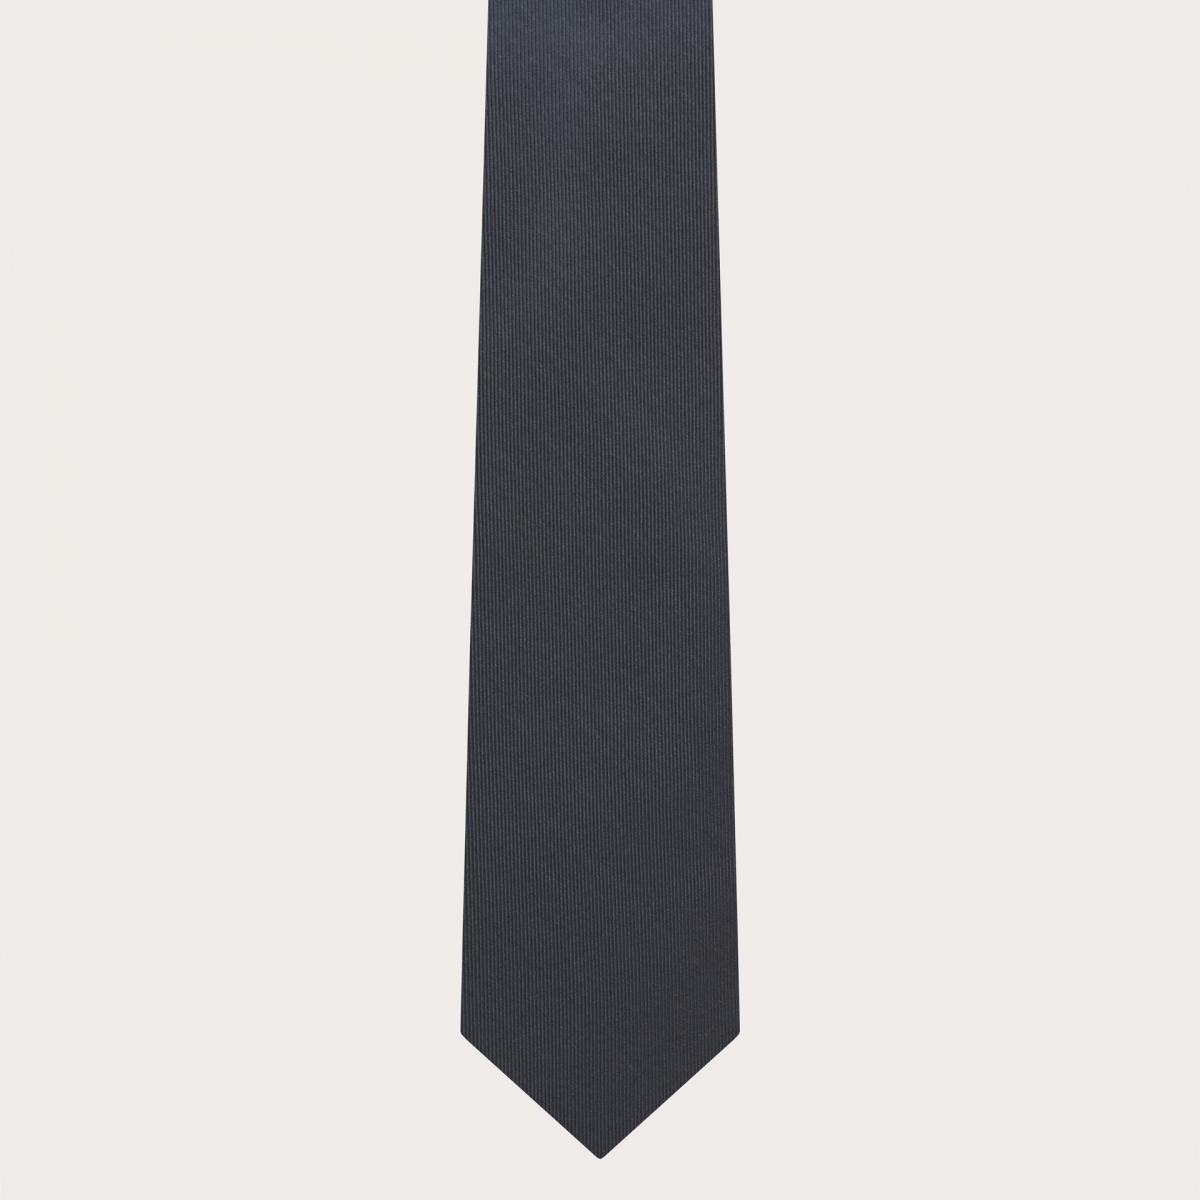 BRUCLE Set aus dünnen Seiden-Hosenträgern und passender Krawatte, anthrazitgrau